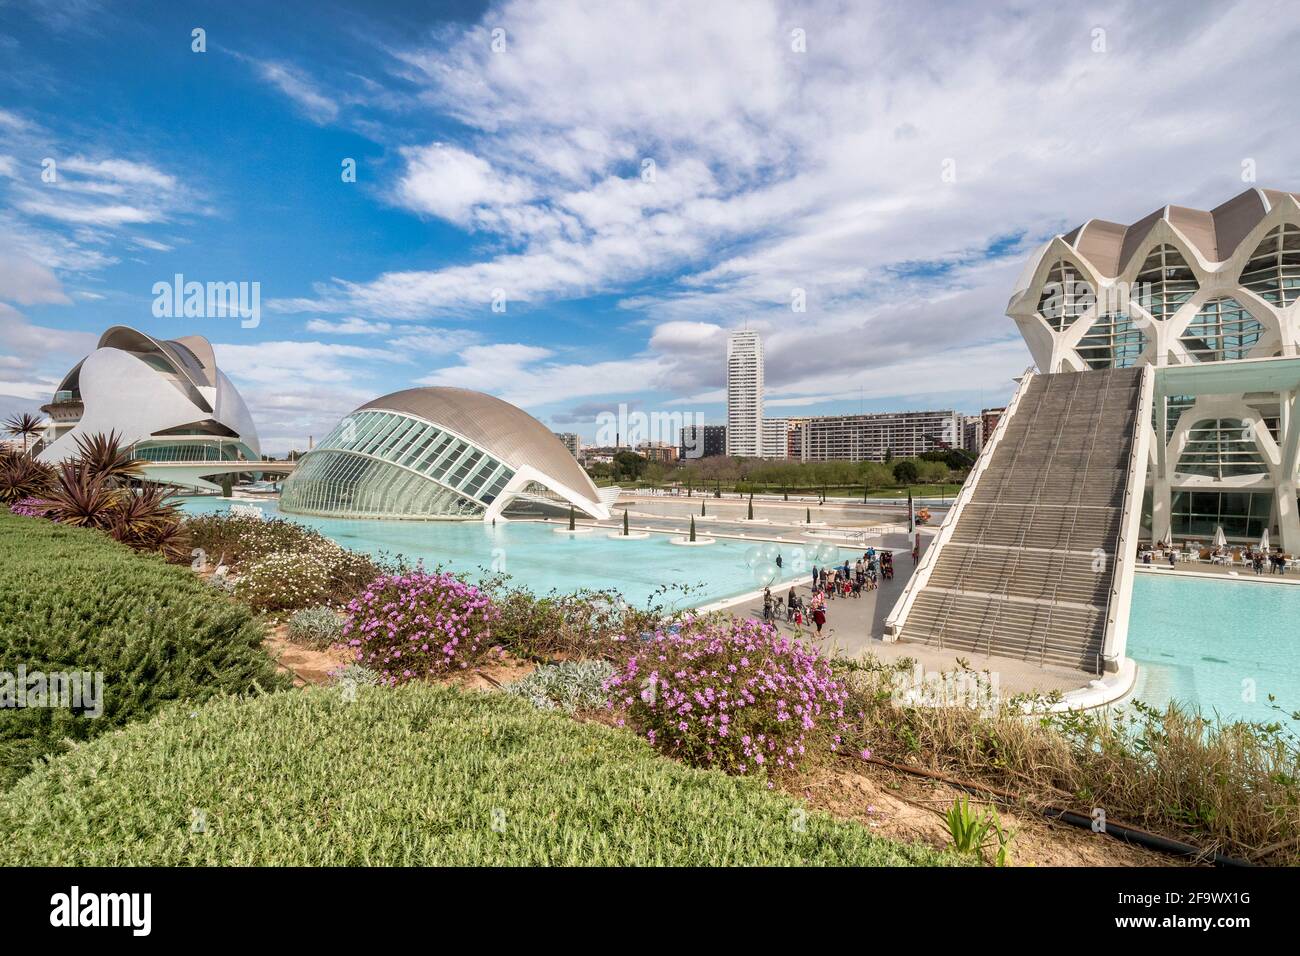 3 mars 2020 : Valence, Espagne - le Muséu de le Ciencies ou le Musée des Sciences à droite, dans la Cité des Arts et des Sciences de Valence, avec le Hemisf Banque D'Images